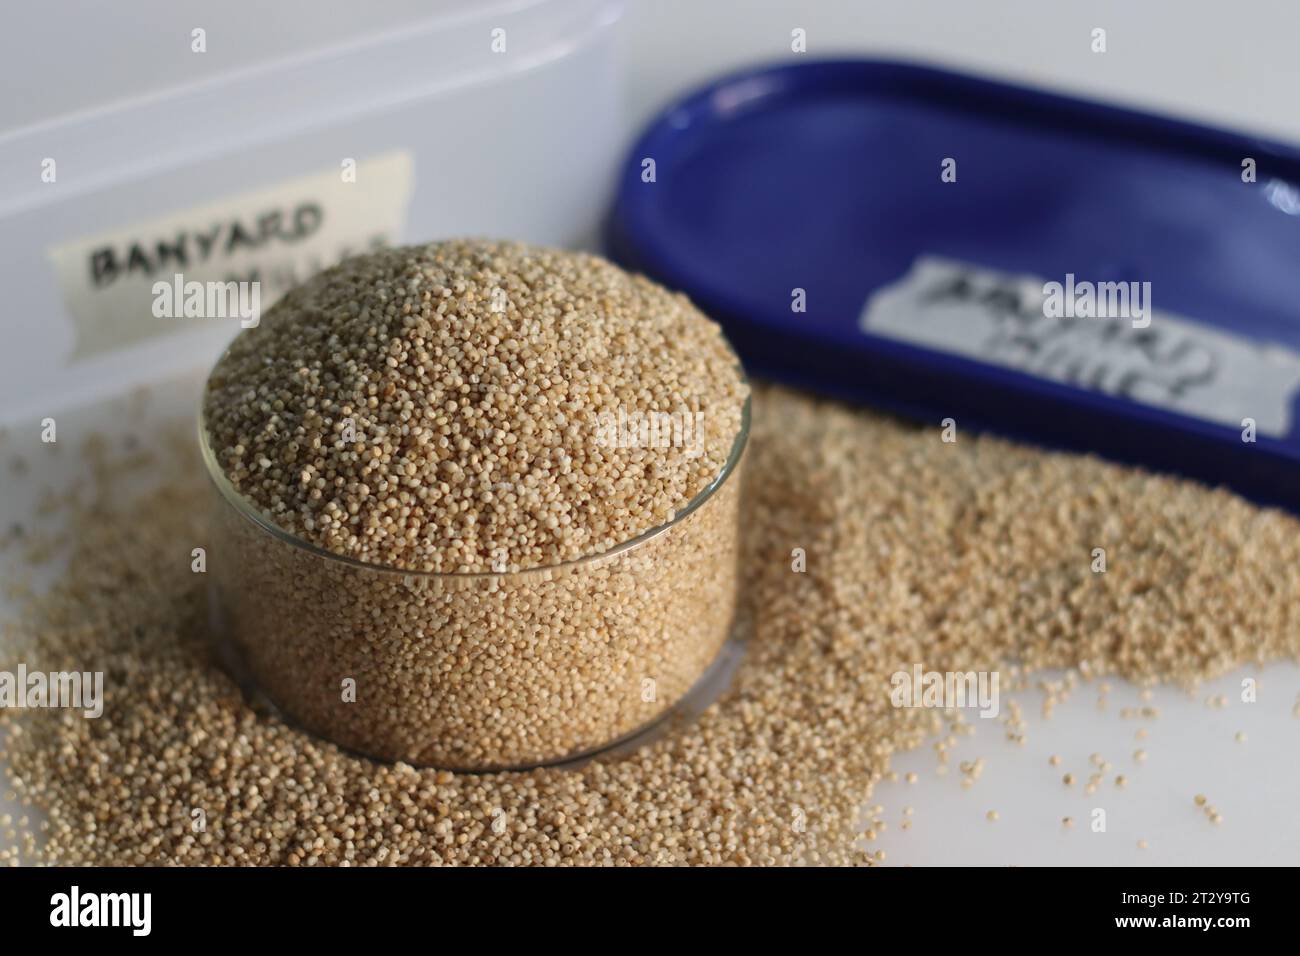 le millet de banyard, un grain sain, dans un bol en verre rempli à ras bord, pour mettre en valeur les petits grains pâles de forme ronde avec une teinte dorée Banque D'Images